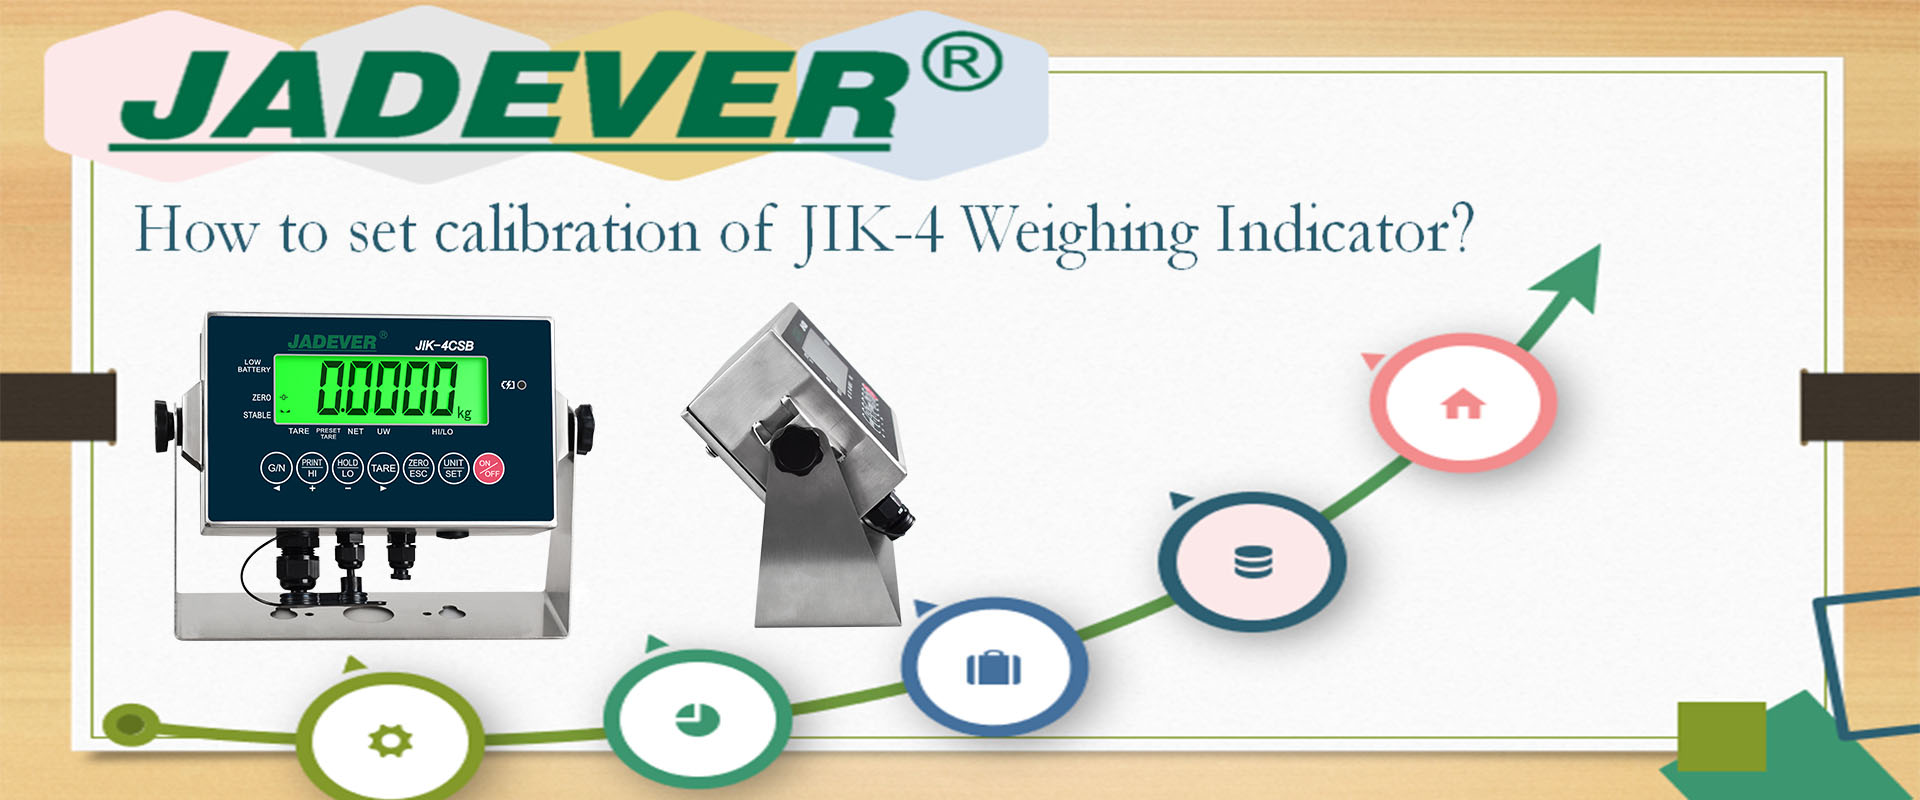 Come impostare la calibrazione dell'indicatore di pesatura JIK-4?
